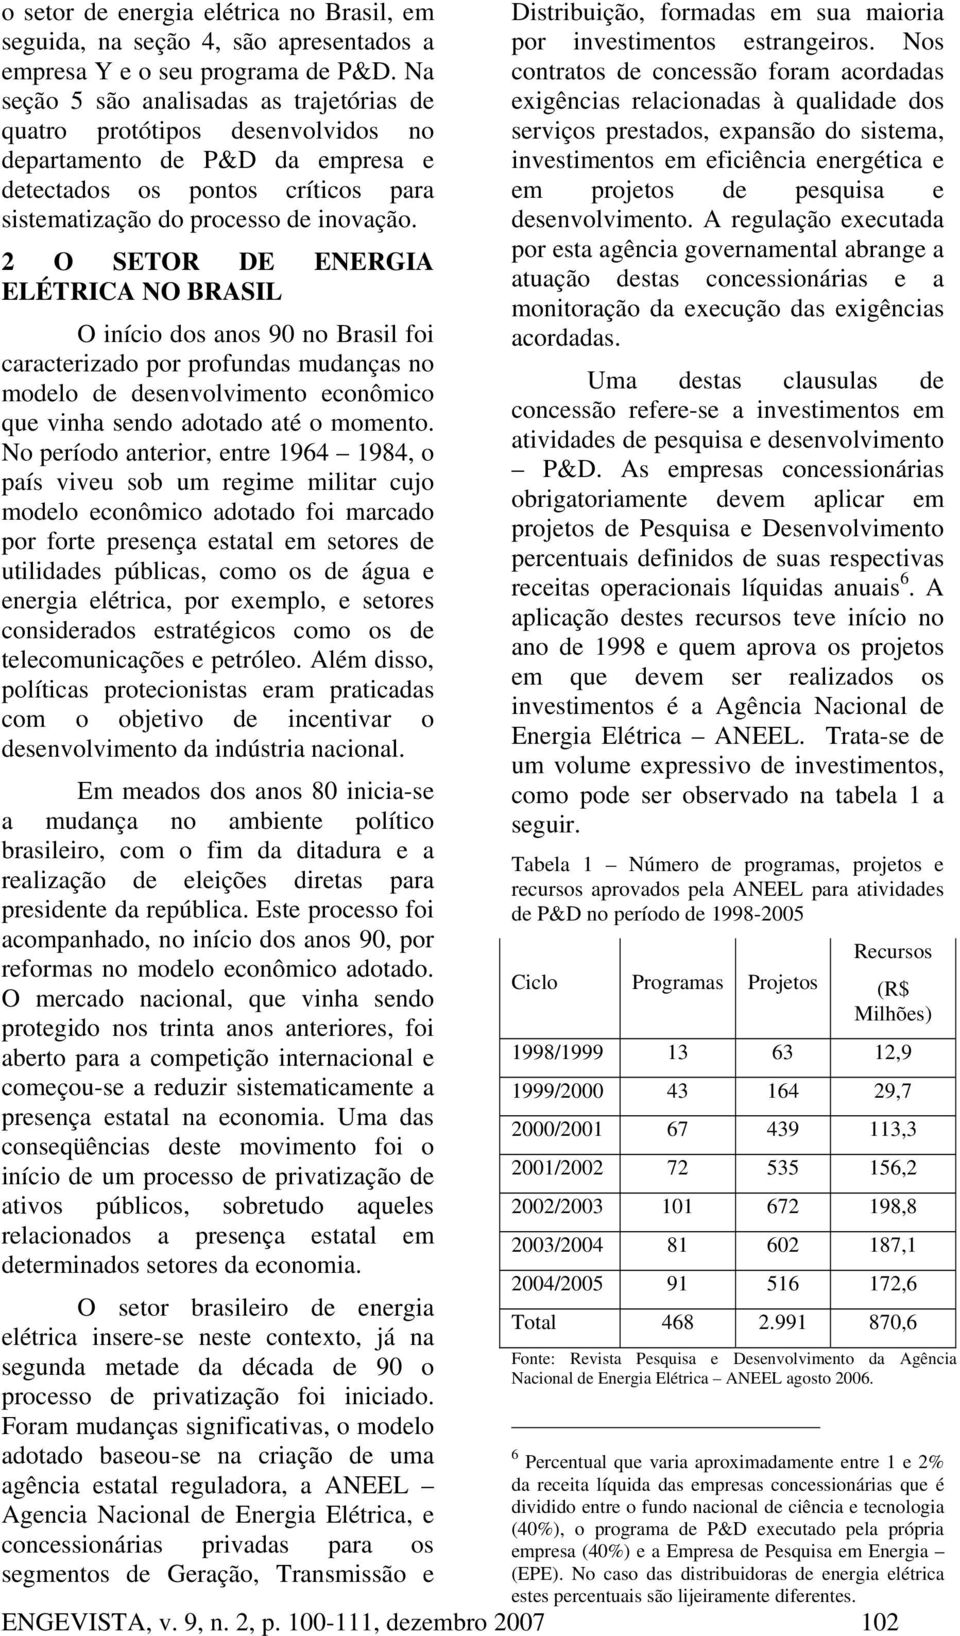 2 O SETOR DE ENERGIA ELÉTRICA NO BRASIL O início dos anos 90 no Brasil foi caracterizado por profundas mudanças no modelo de desenvolvimento econômico que vinha sendo adotado até o momento.